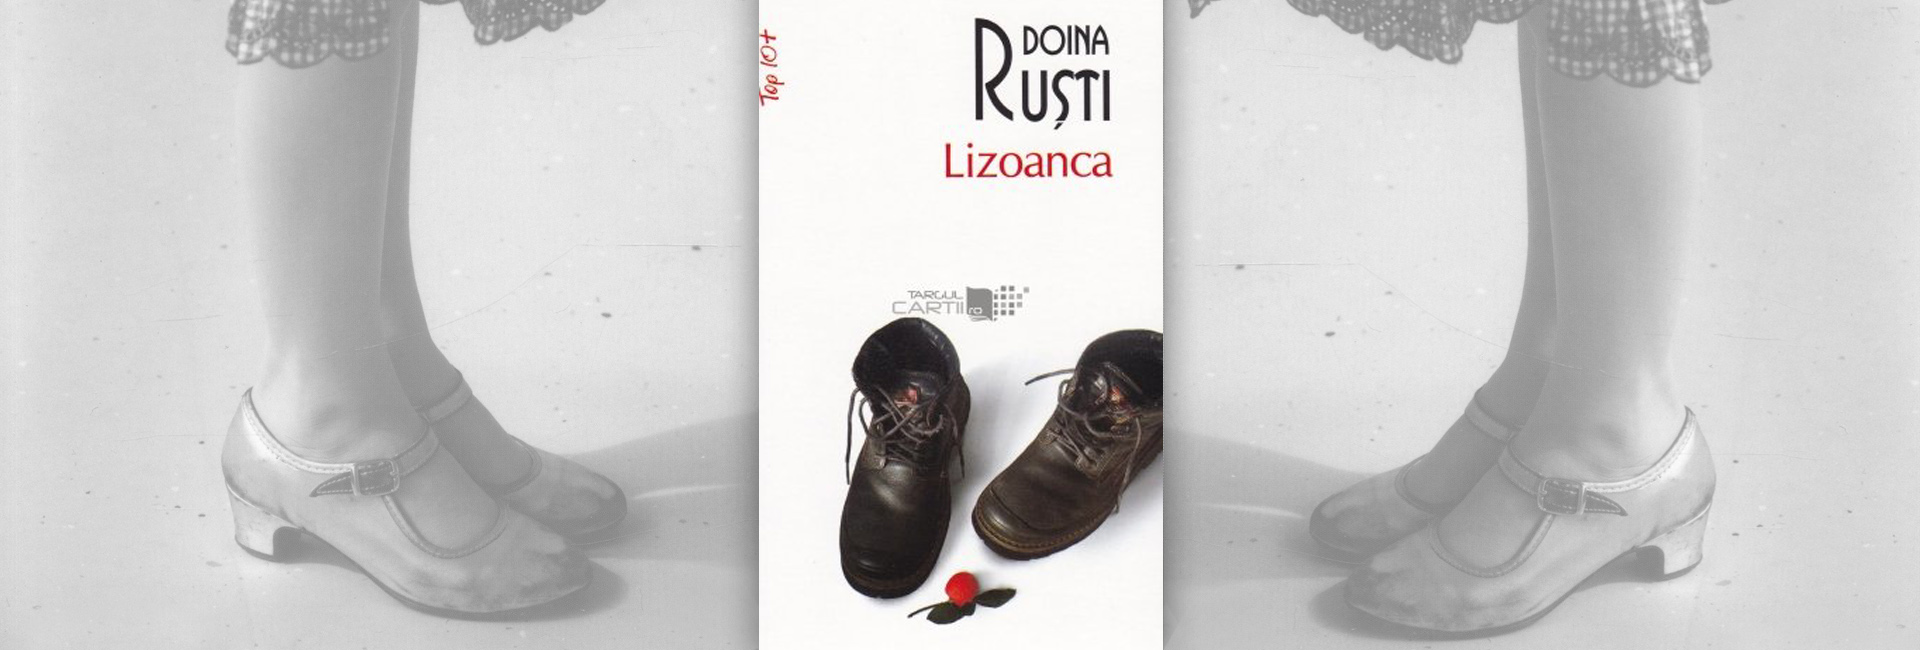 recenzie Lizoanca roman Doina Ruști copii abuzaţi